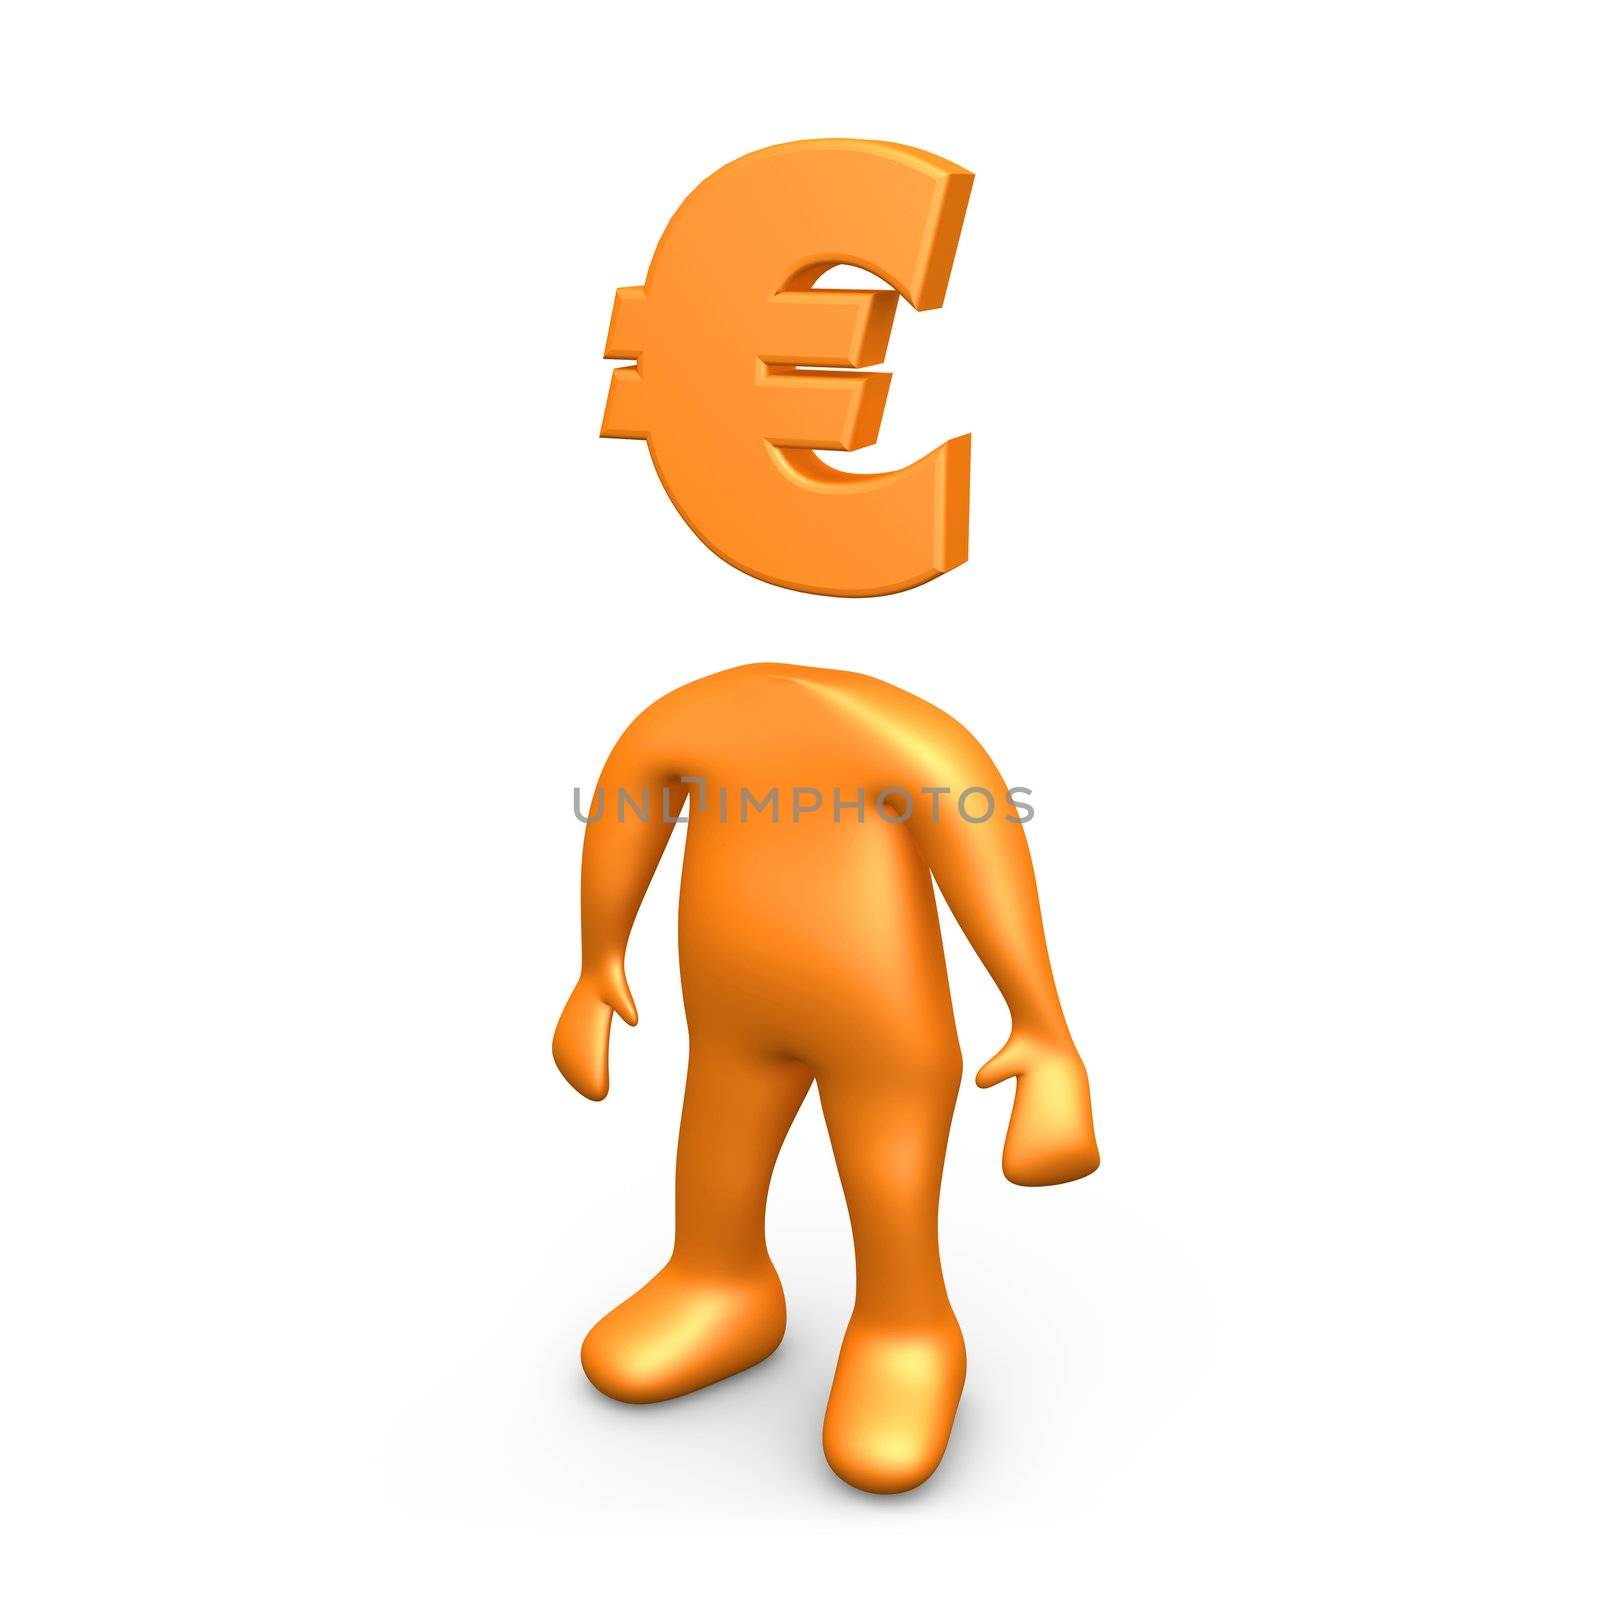 Euro Person by 3pod